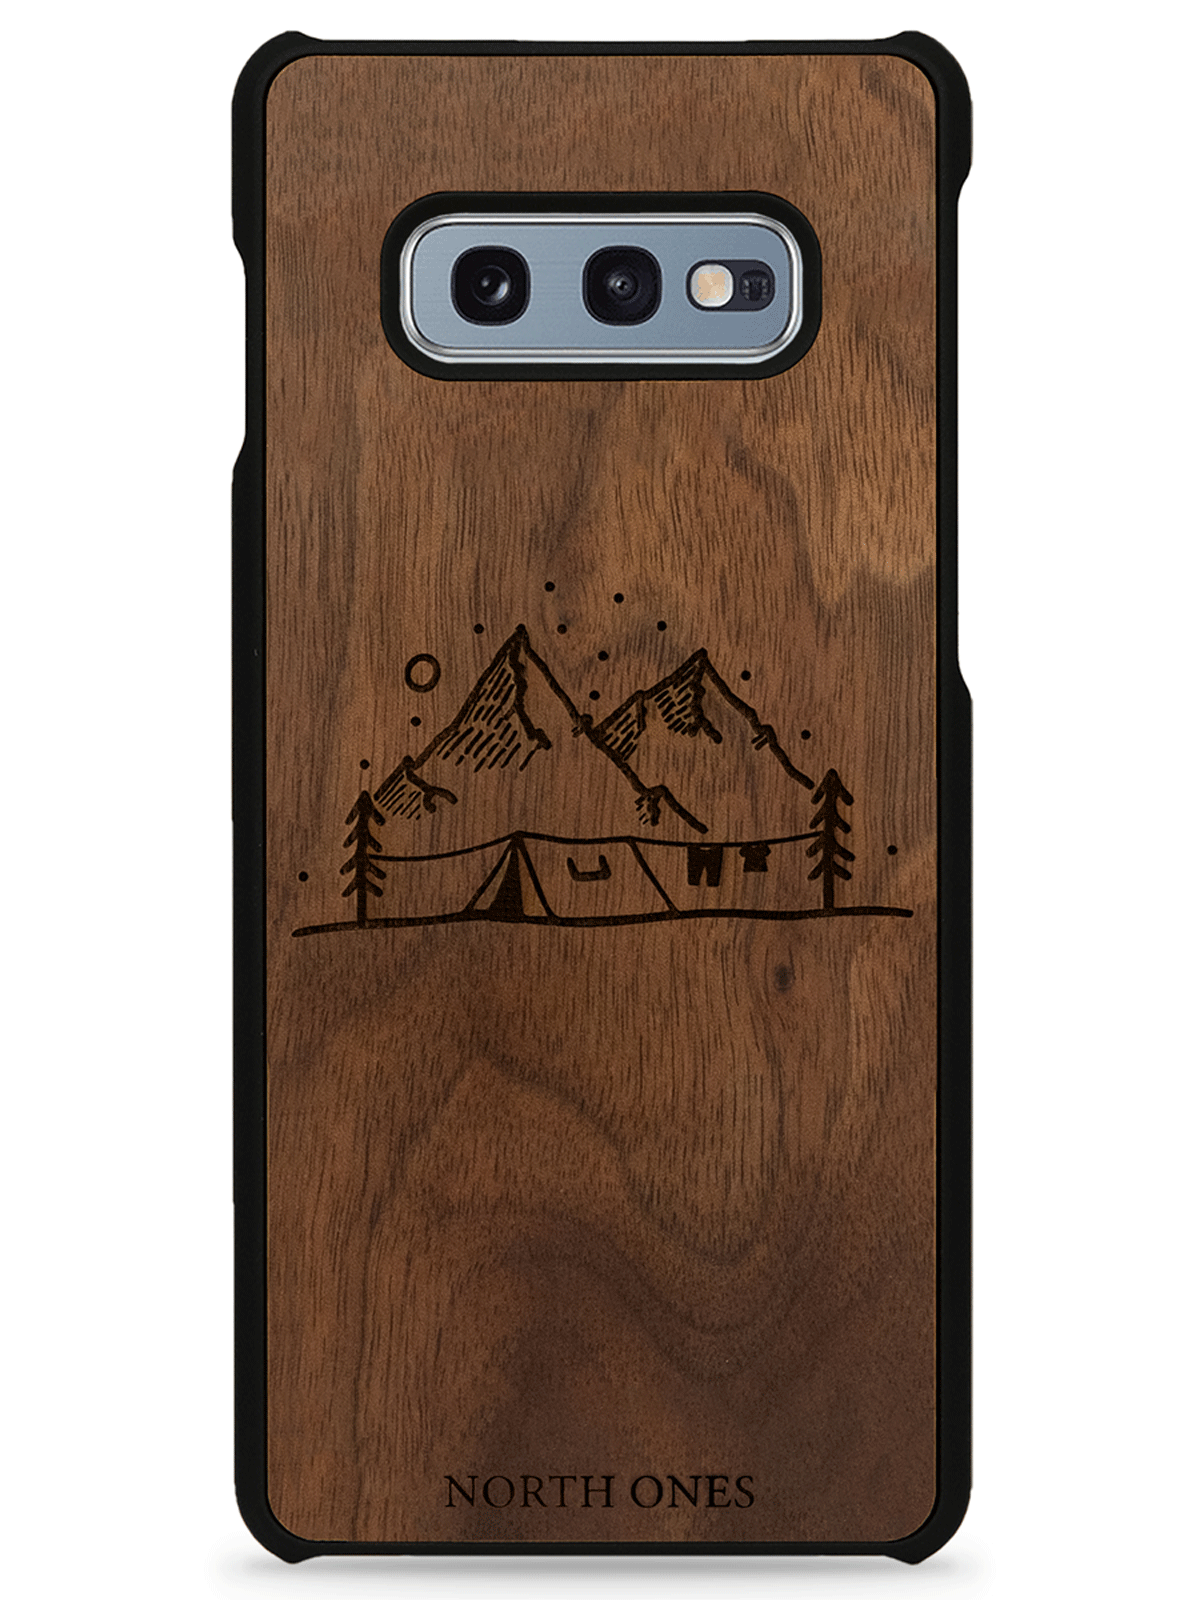 Mobilskal trä vildmark walnut inivildmarken edition Samsung galaxy S10e